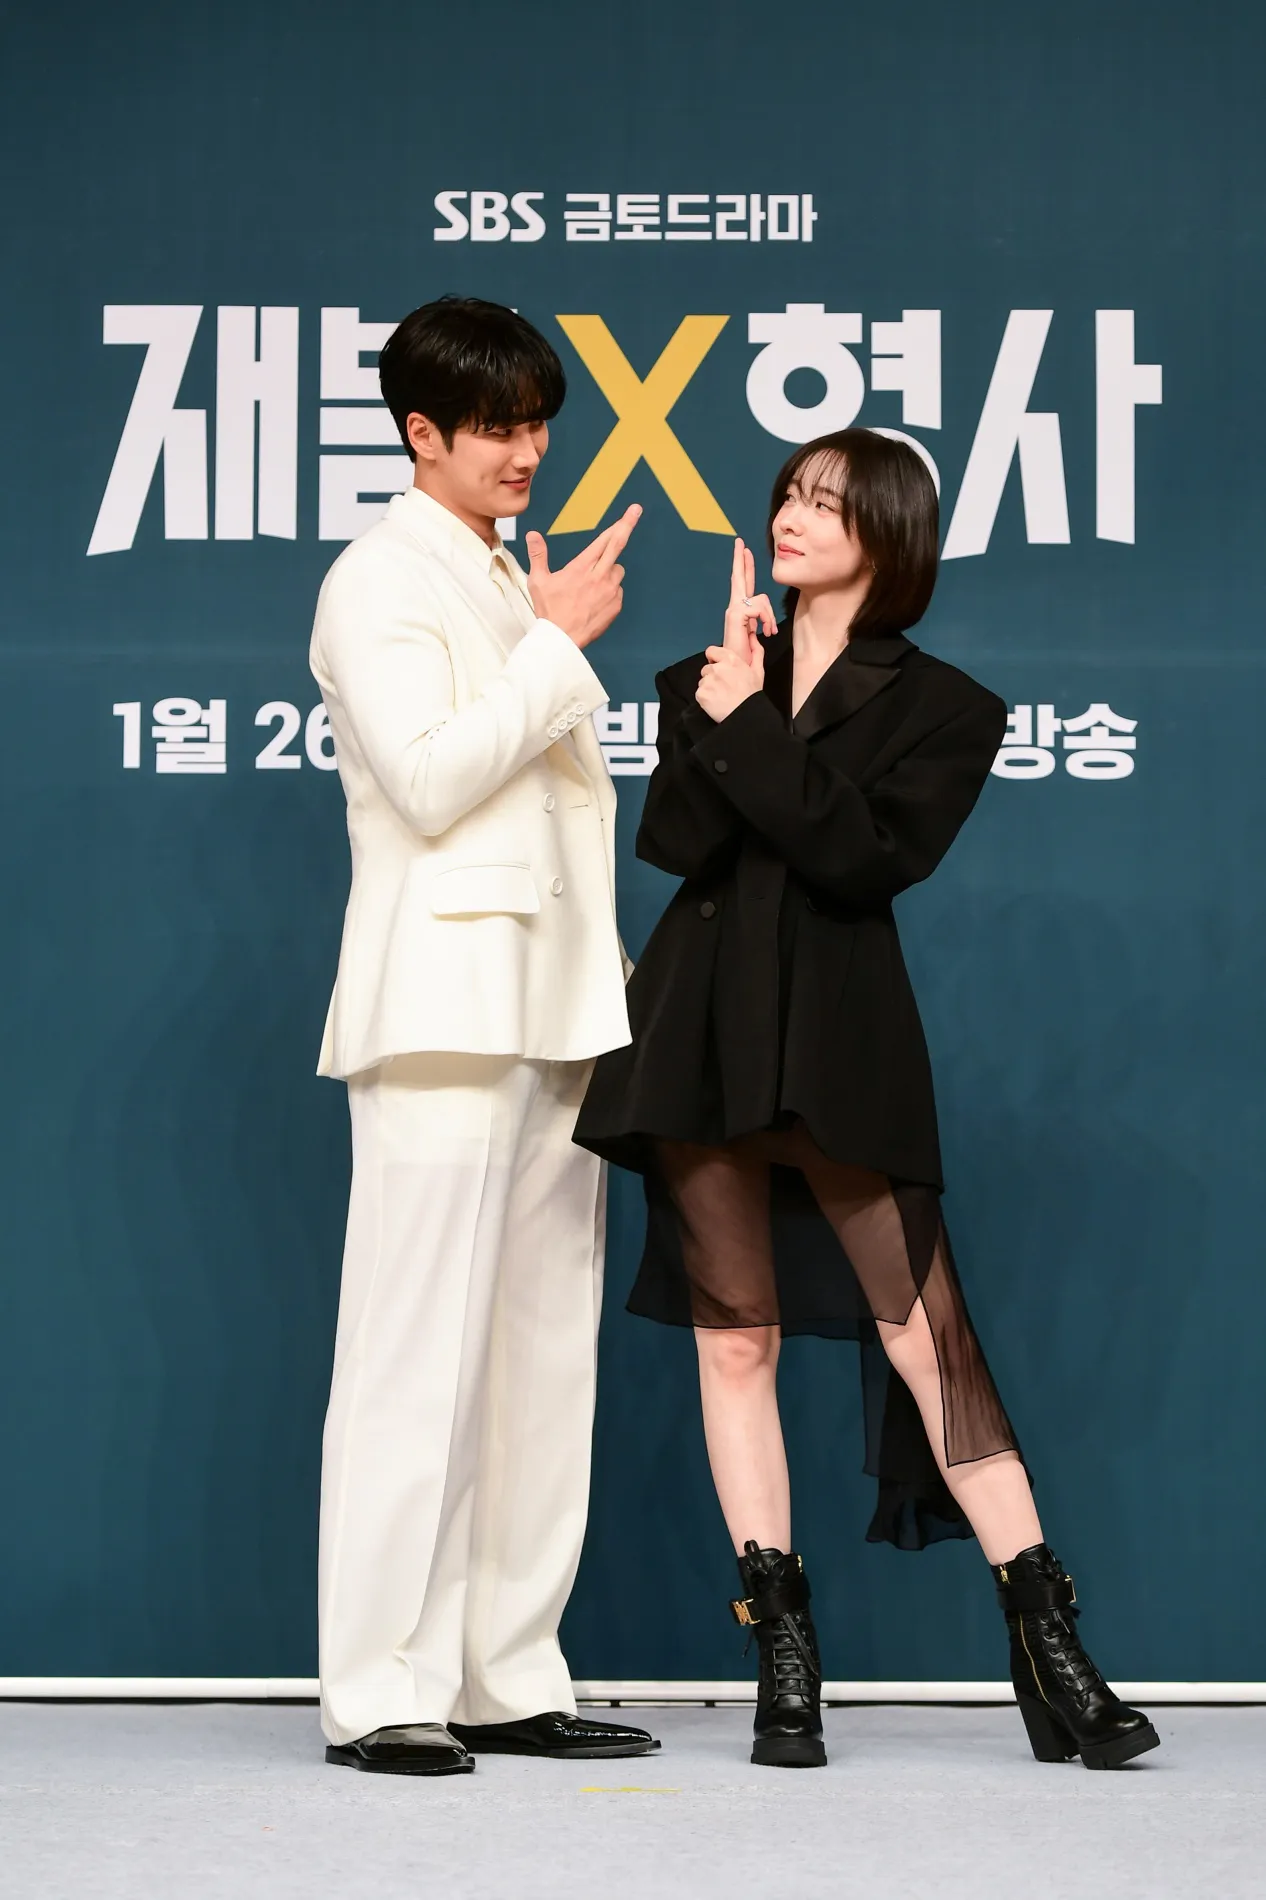 韓国ドラマ「財閥 x 刑事」製作発表会がソウルにて開催